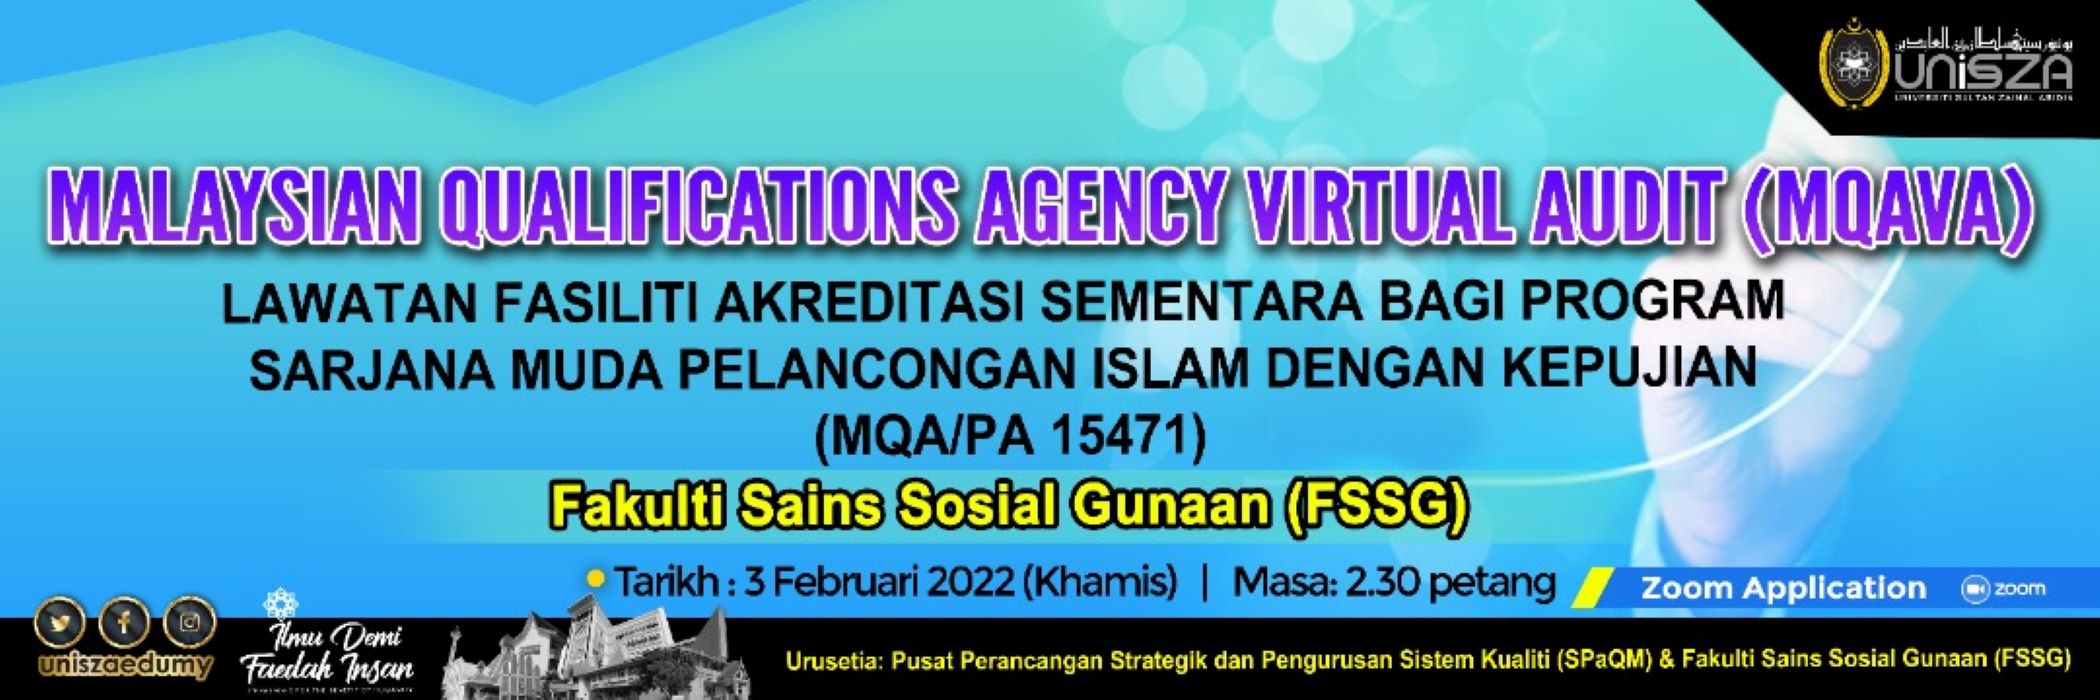 MQAVA Lawatan Fasiliti Akreditasi Sementara Bagi Program Sarjana Muda Pelancongan Islam Dengan Kepujian (MQA/PA 15471), FSSG